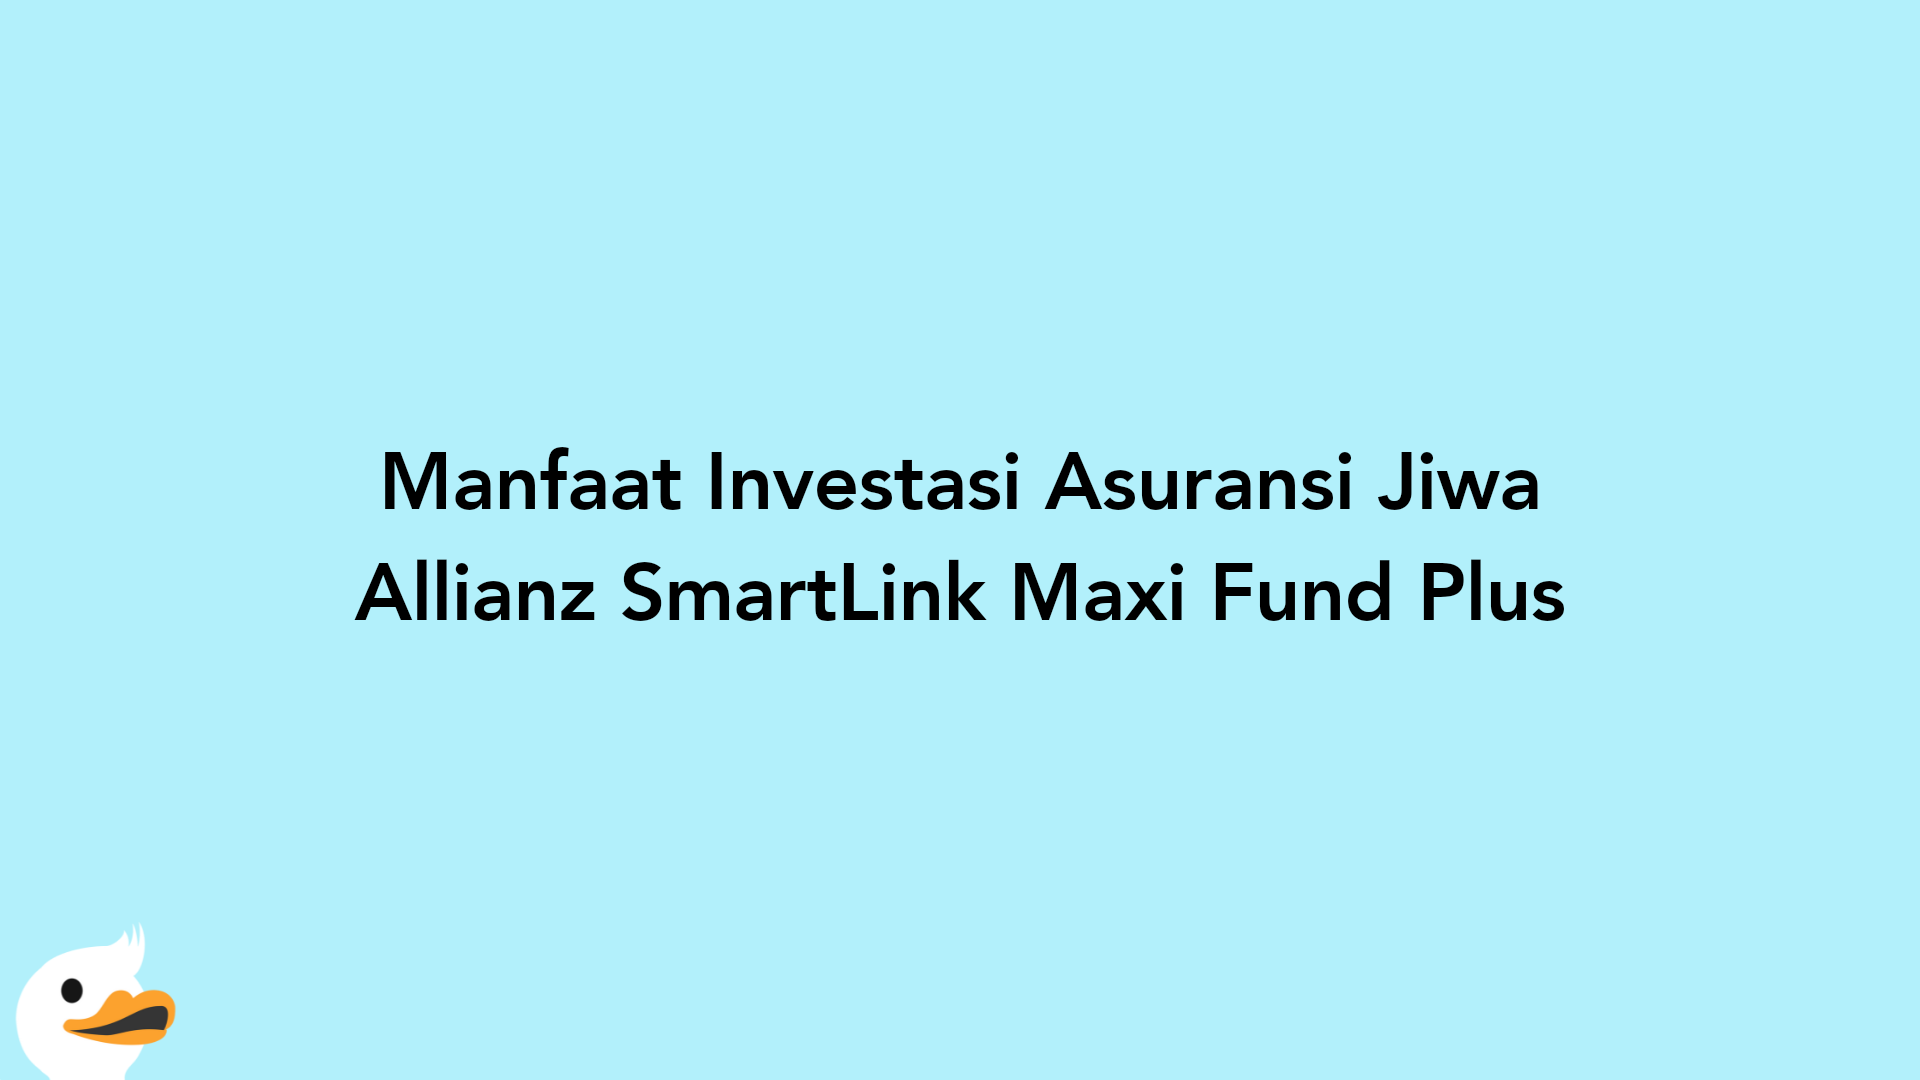 Manfaat Investasi Asuransi Jiwa Allianz SmartLink Maxi Fund Plus